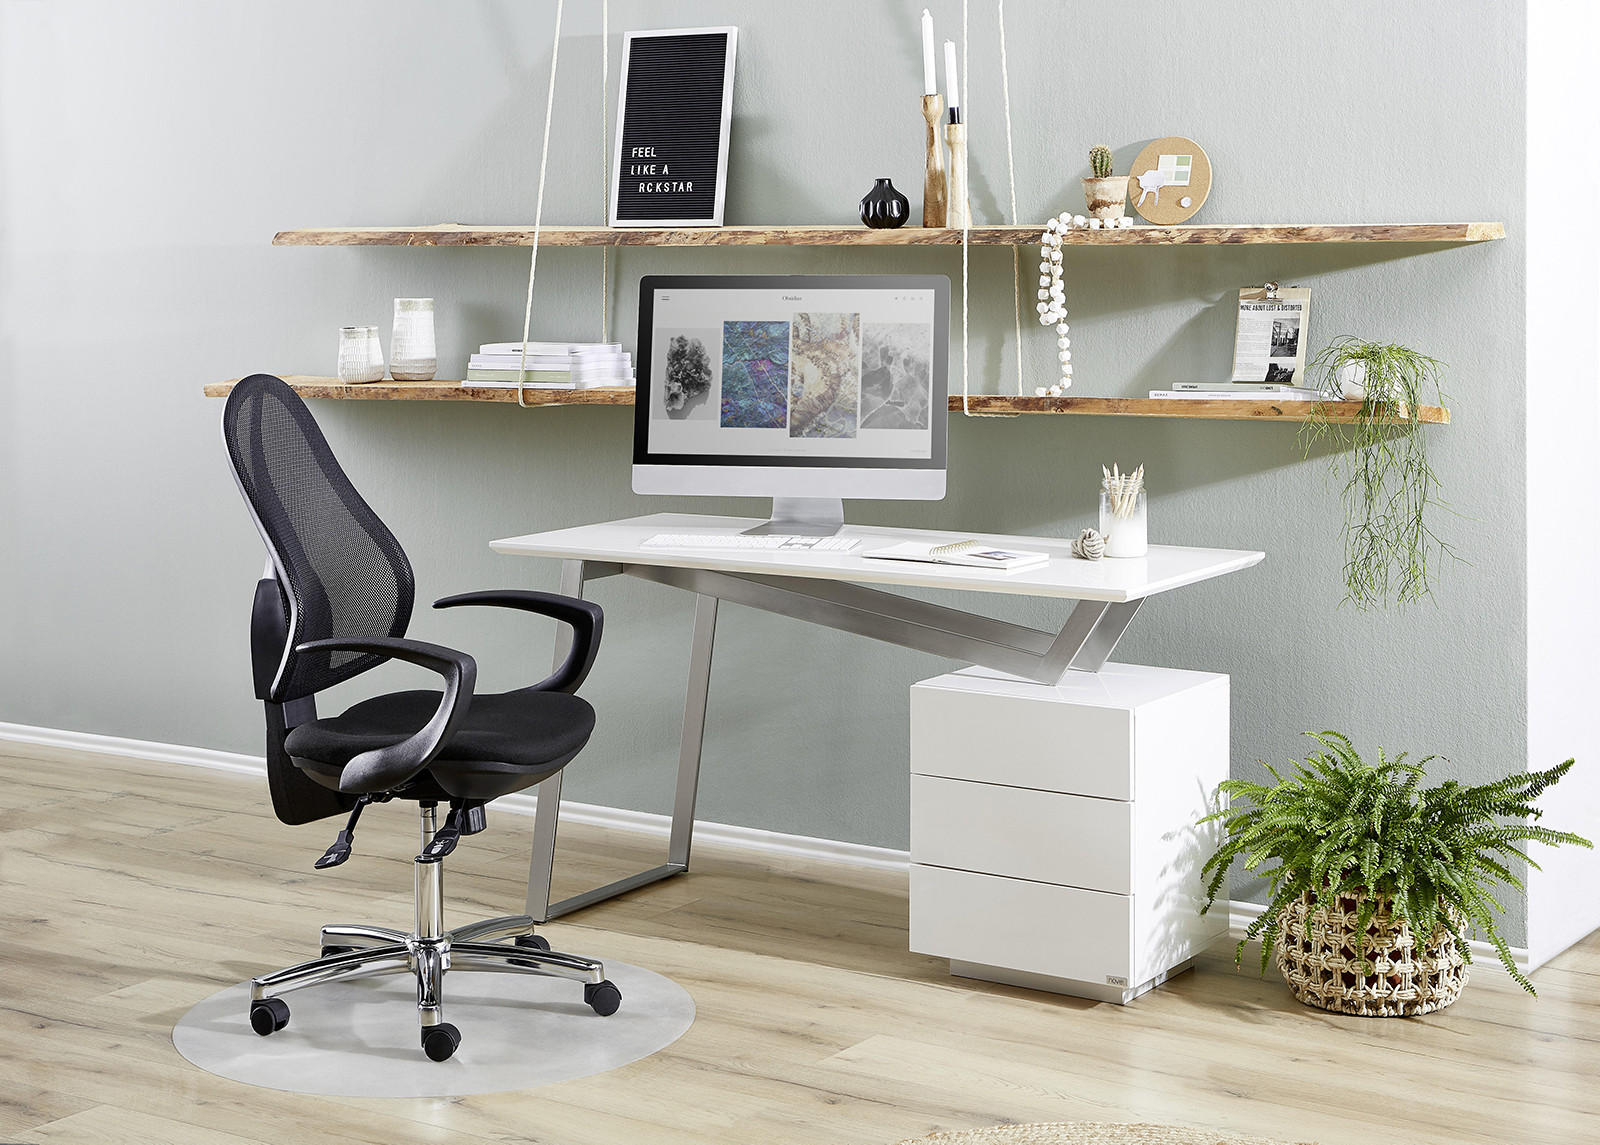 Domača pisarna v modernem stilu, bele barve s kovinskimi dodatki.